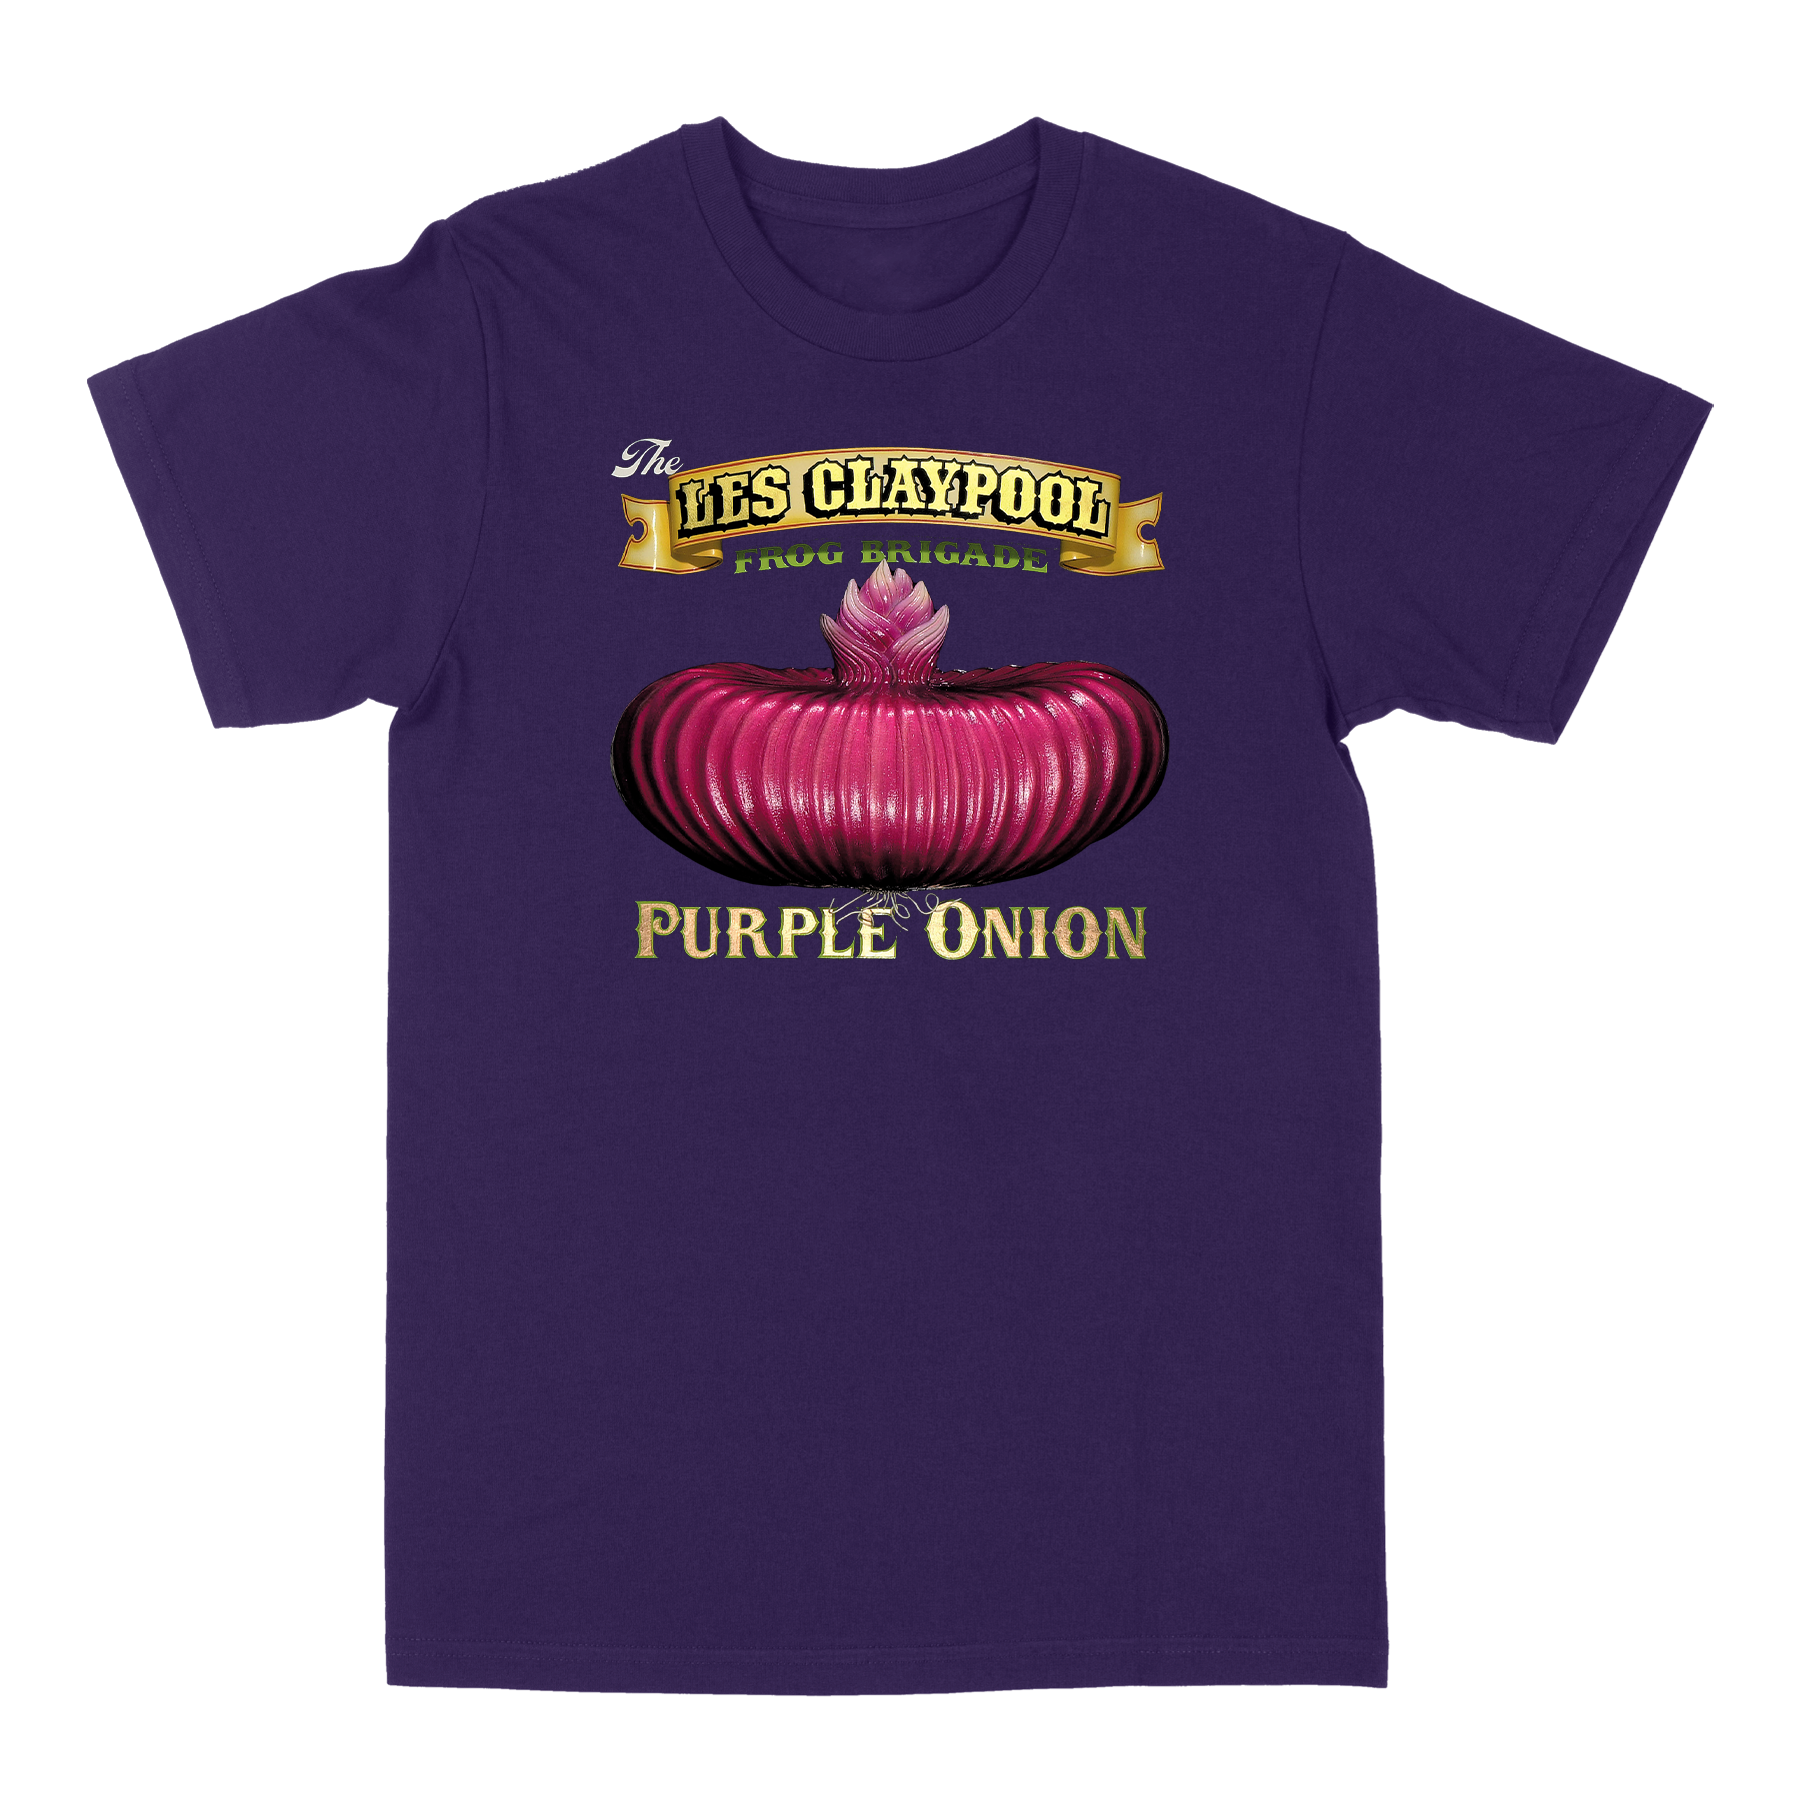 Les Claypool - Purple Onion Tee